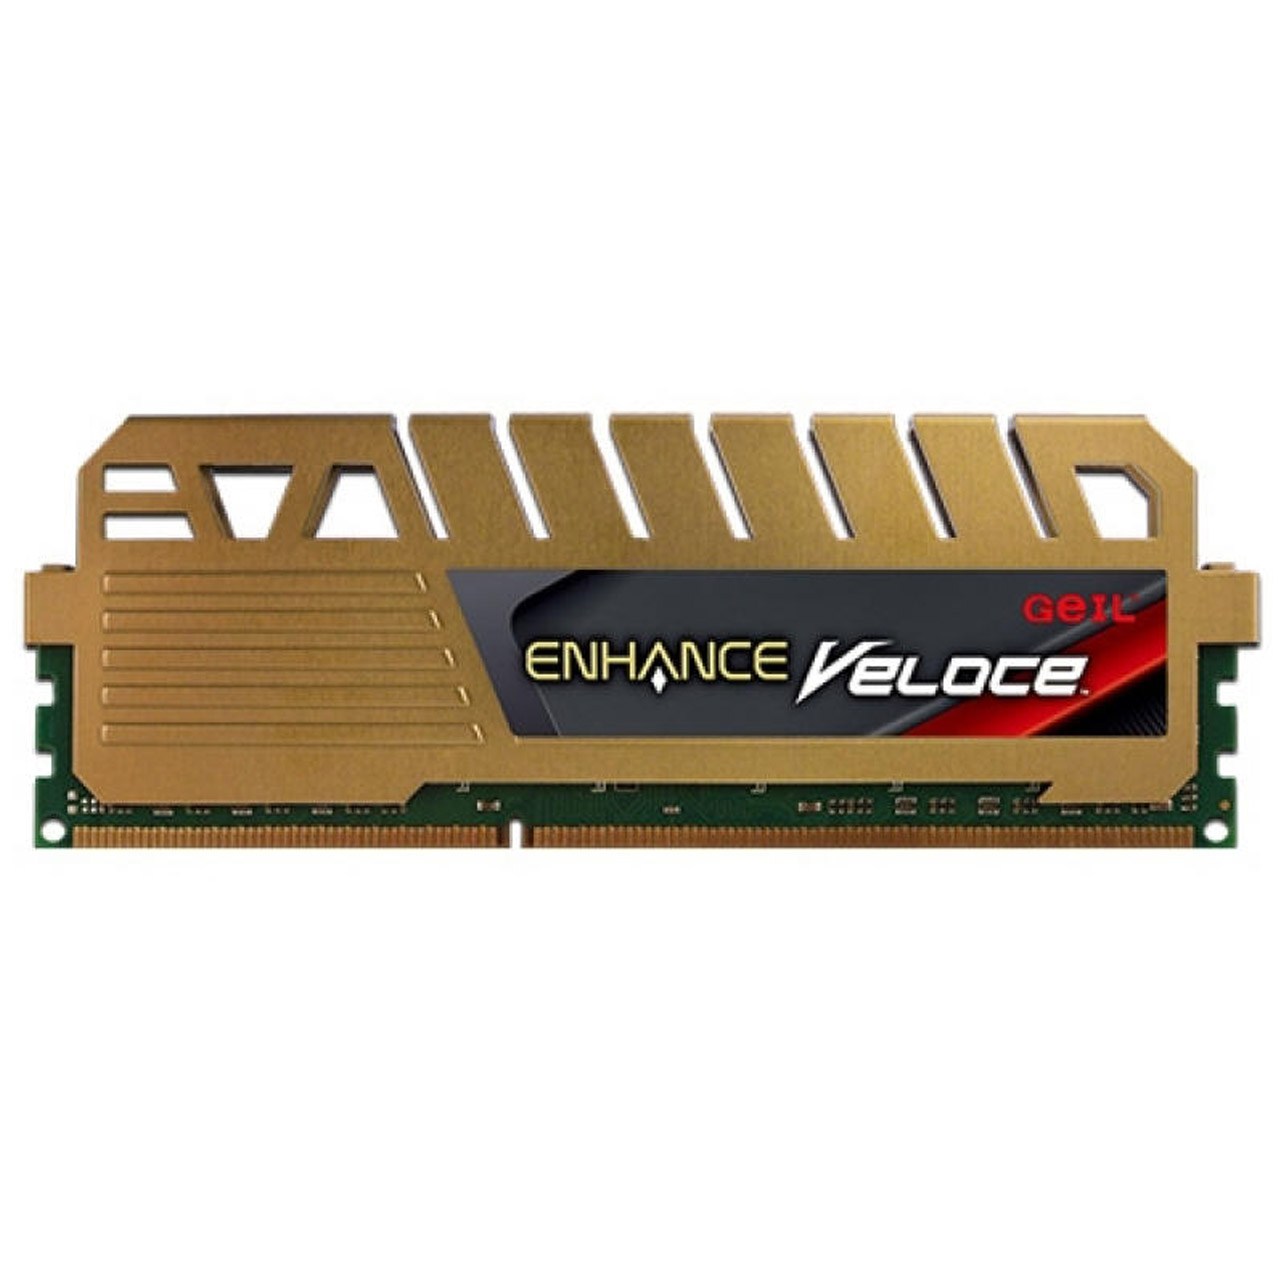 رم دسکتاپ DDR3 تک کاناله 1600 مگاهرتز CL9 گیل مدل Enhance Veloce ظرفیت 4 گیگابایت